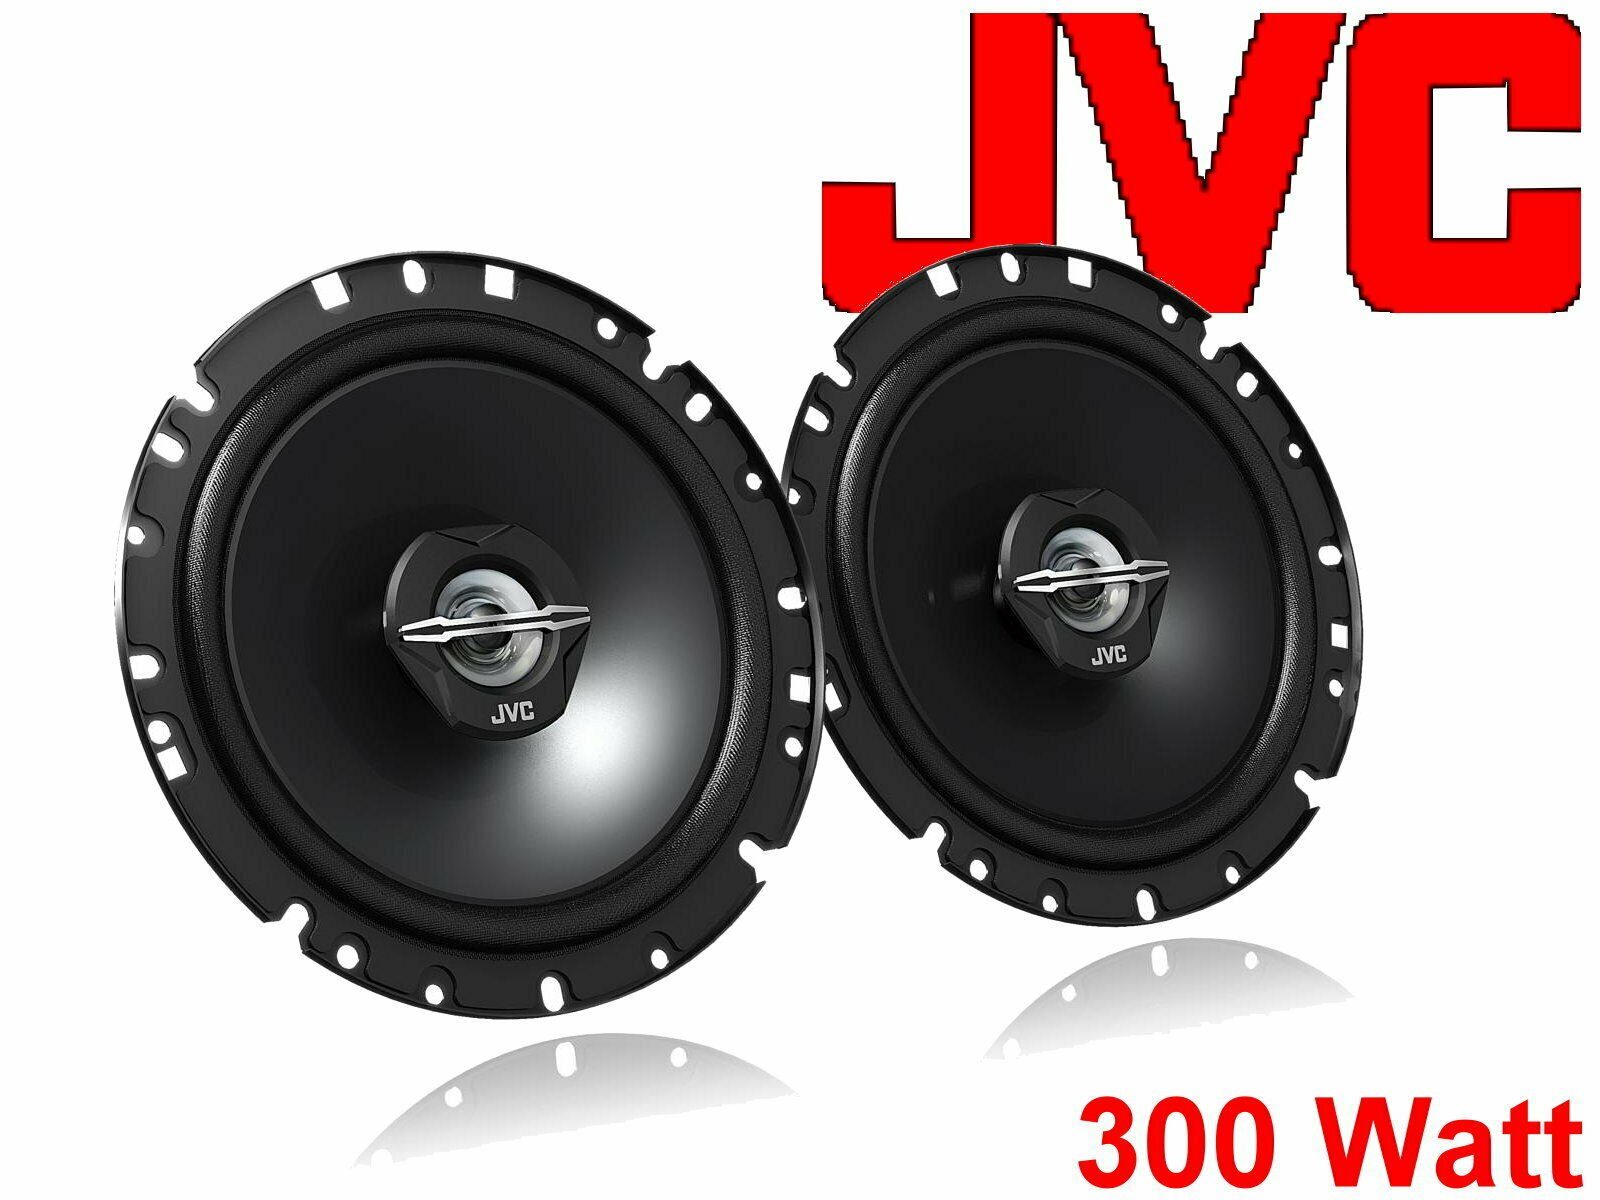 Auto-Lautsprecher Lautsprecher Seat Bj (30 0 W) für passend Set Altea DSX JVC